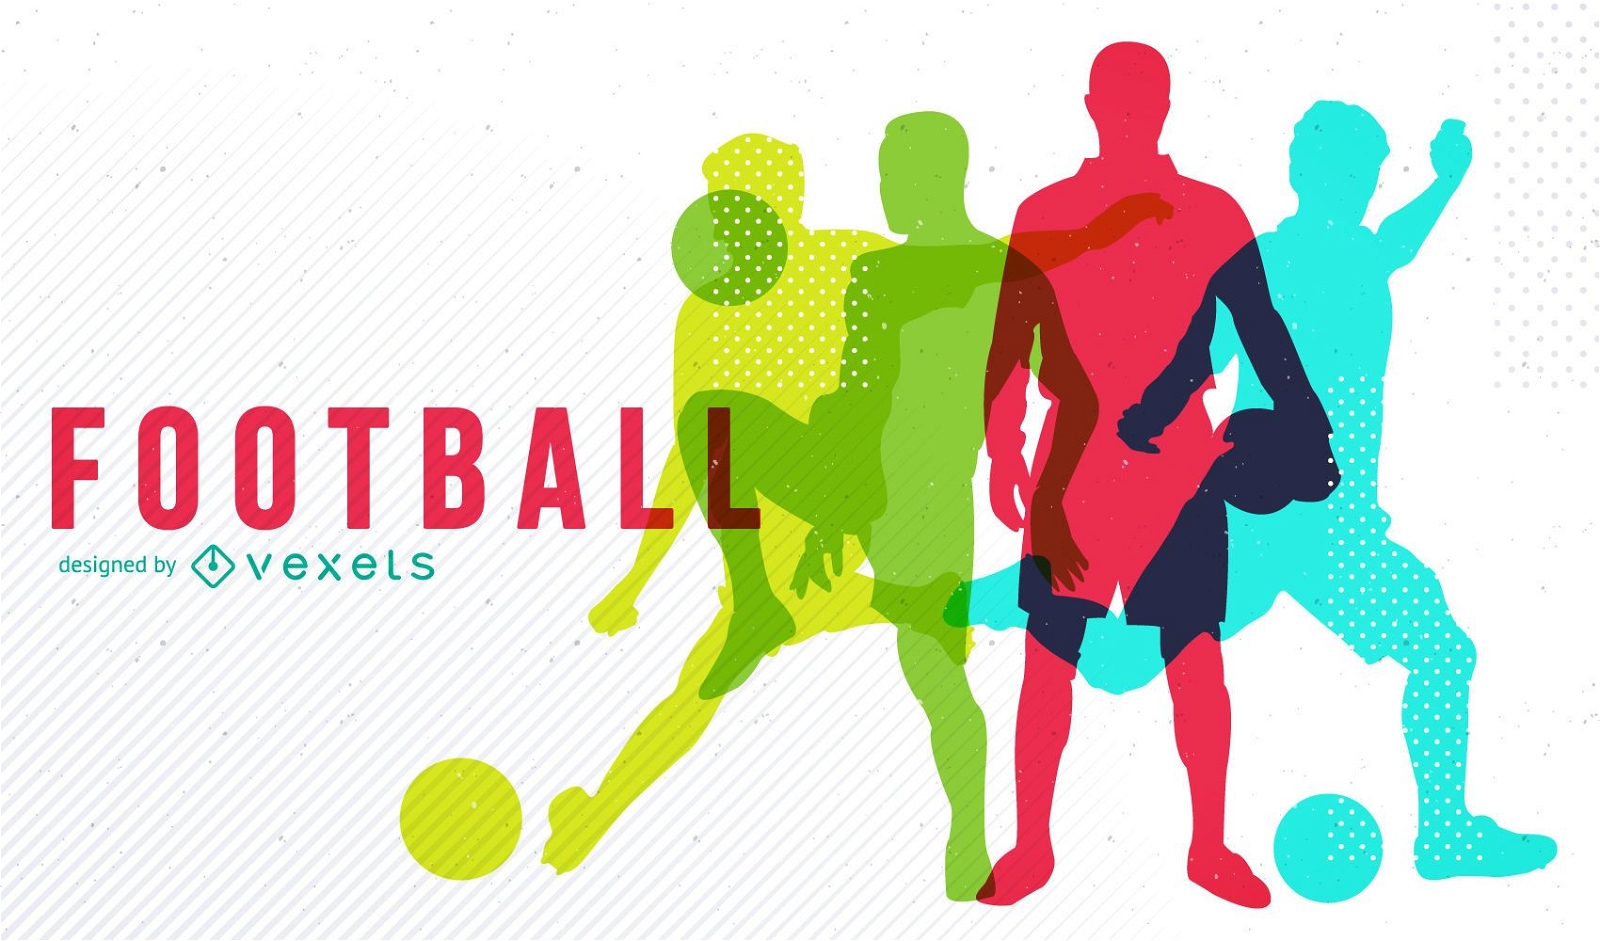 Diseño de fútbol con silueta colorida.